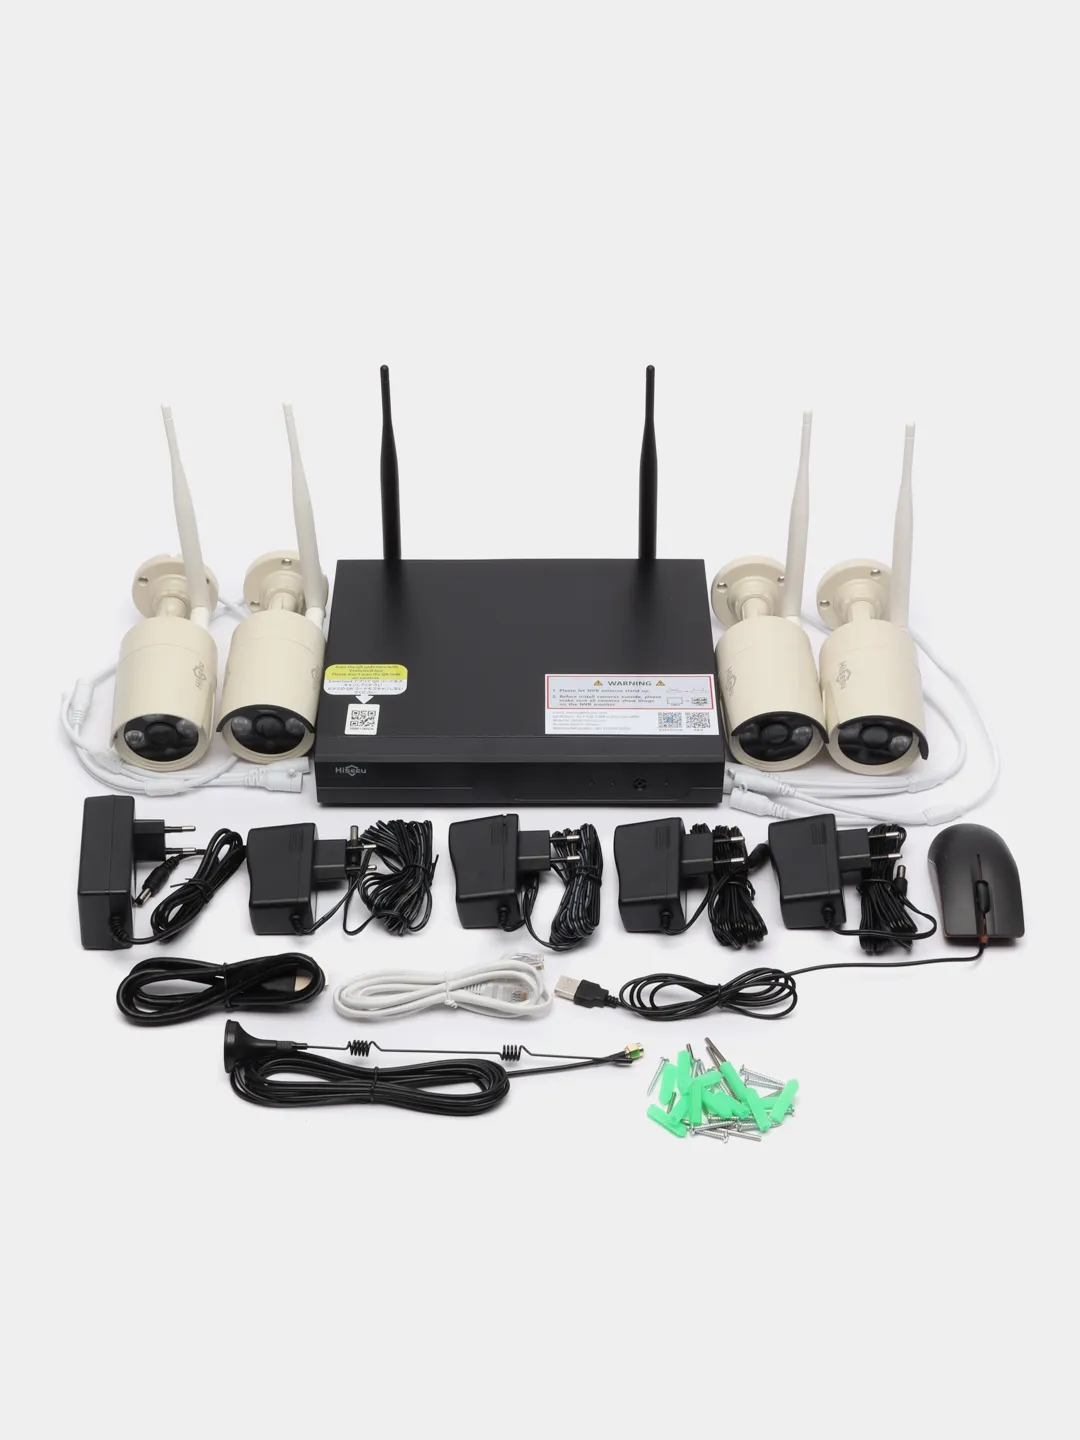 Комплекткамеруличноговидеонаблюдения8-канального(беспроводной)Wi-Fi3MPкупитьпоцене16800₽винтернет-магазинеKazanExpress